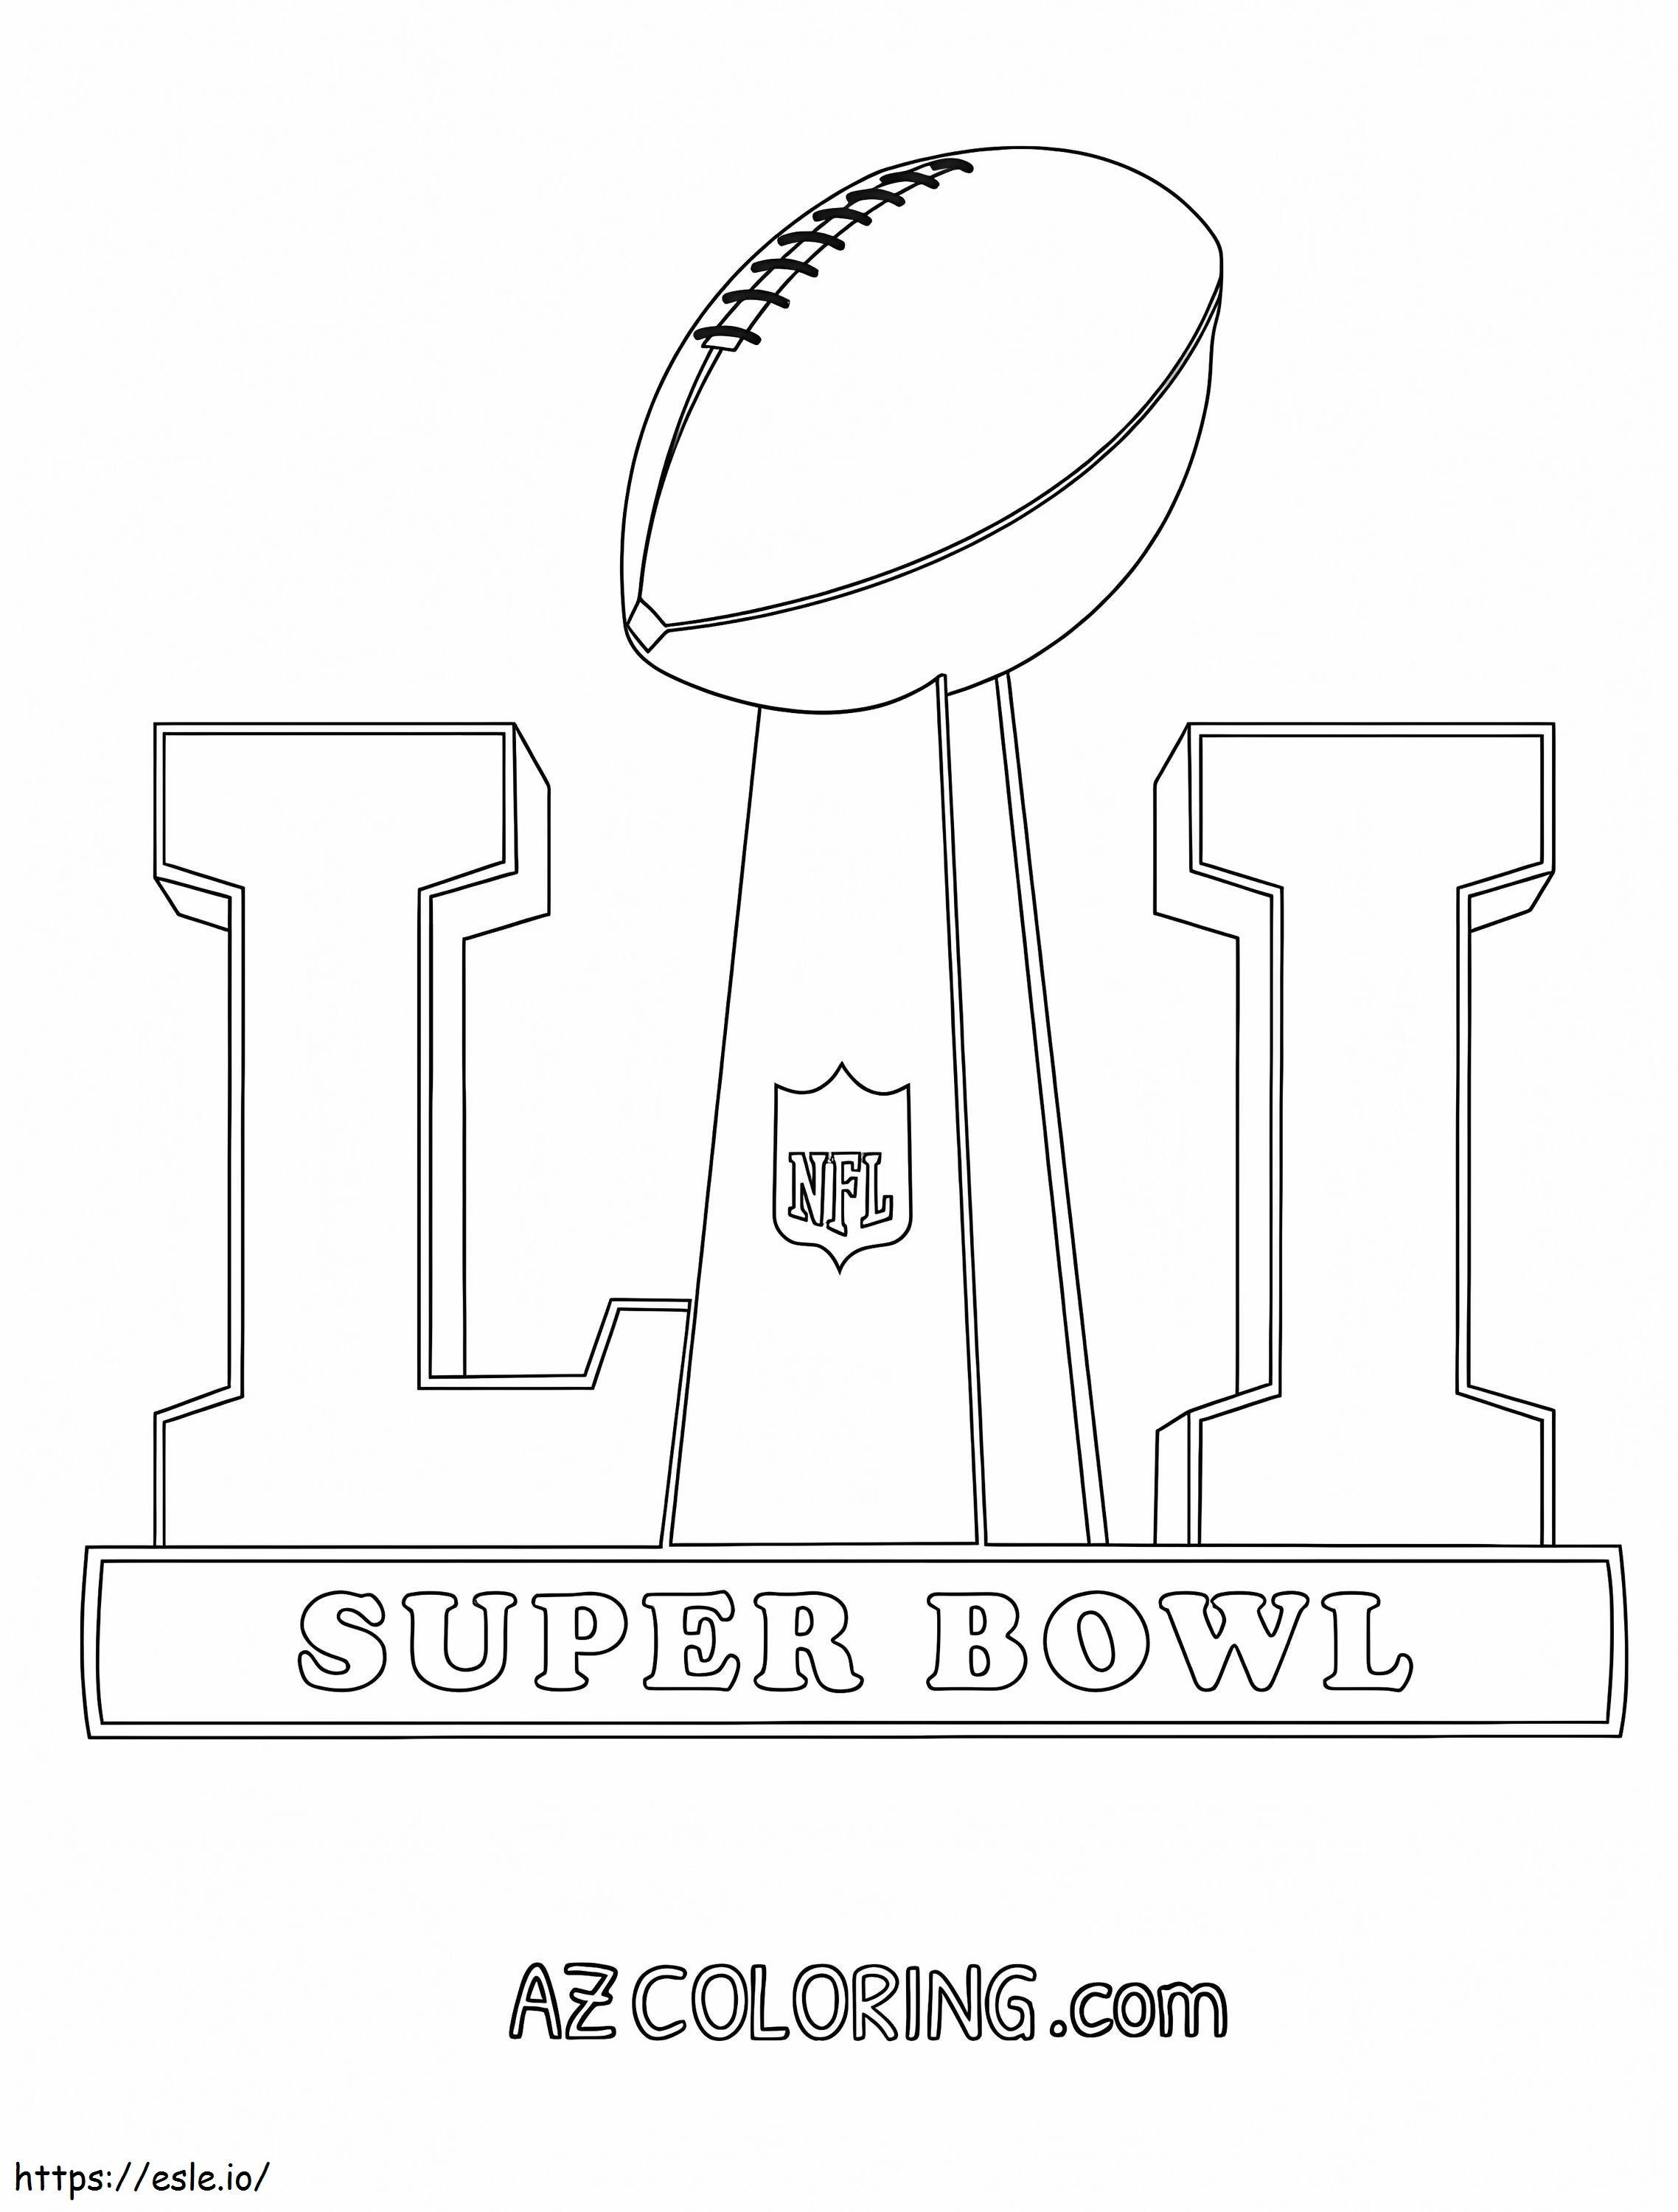 Super Bowl 2017 kleurplaat kleurplaat kleurplaat